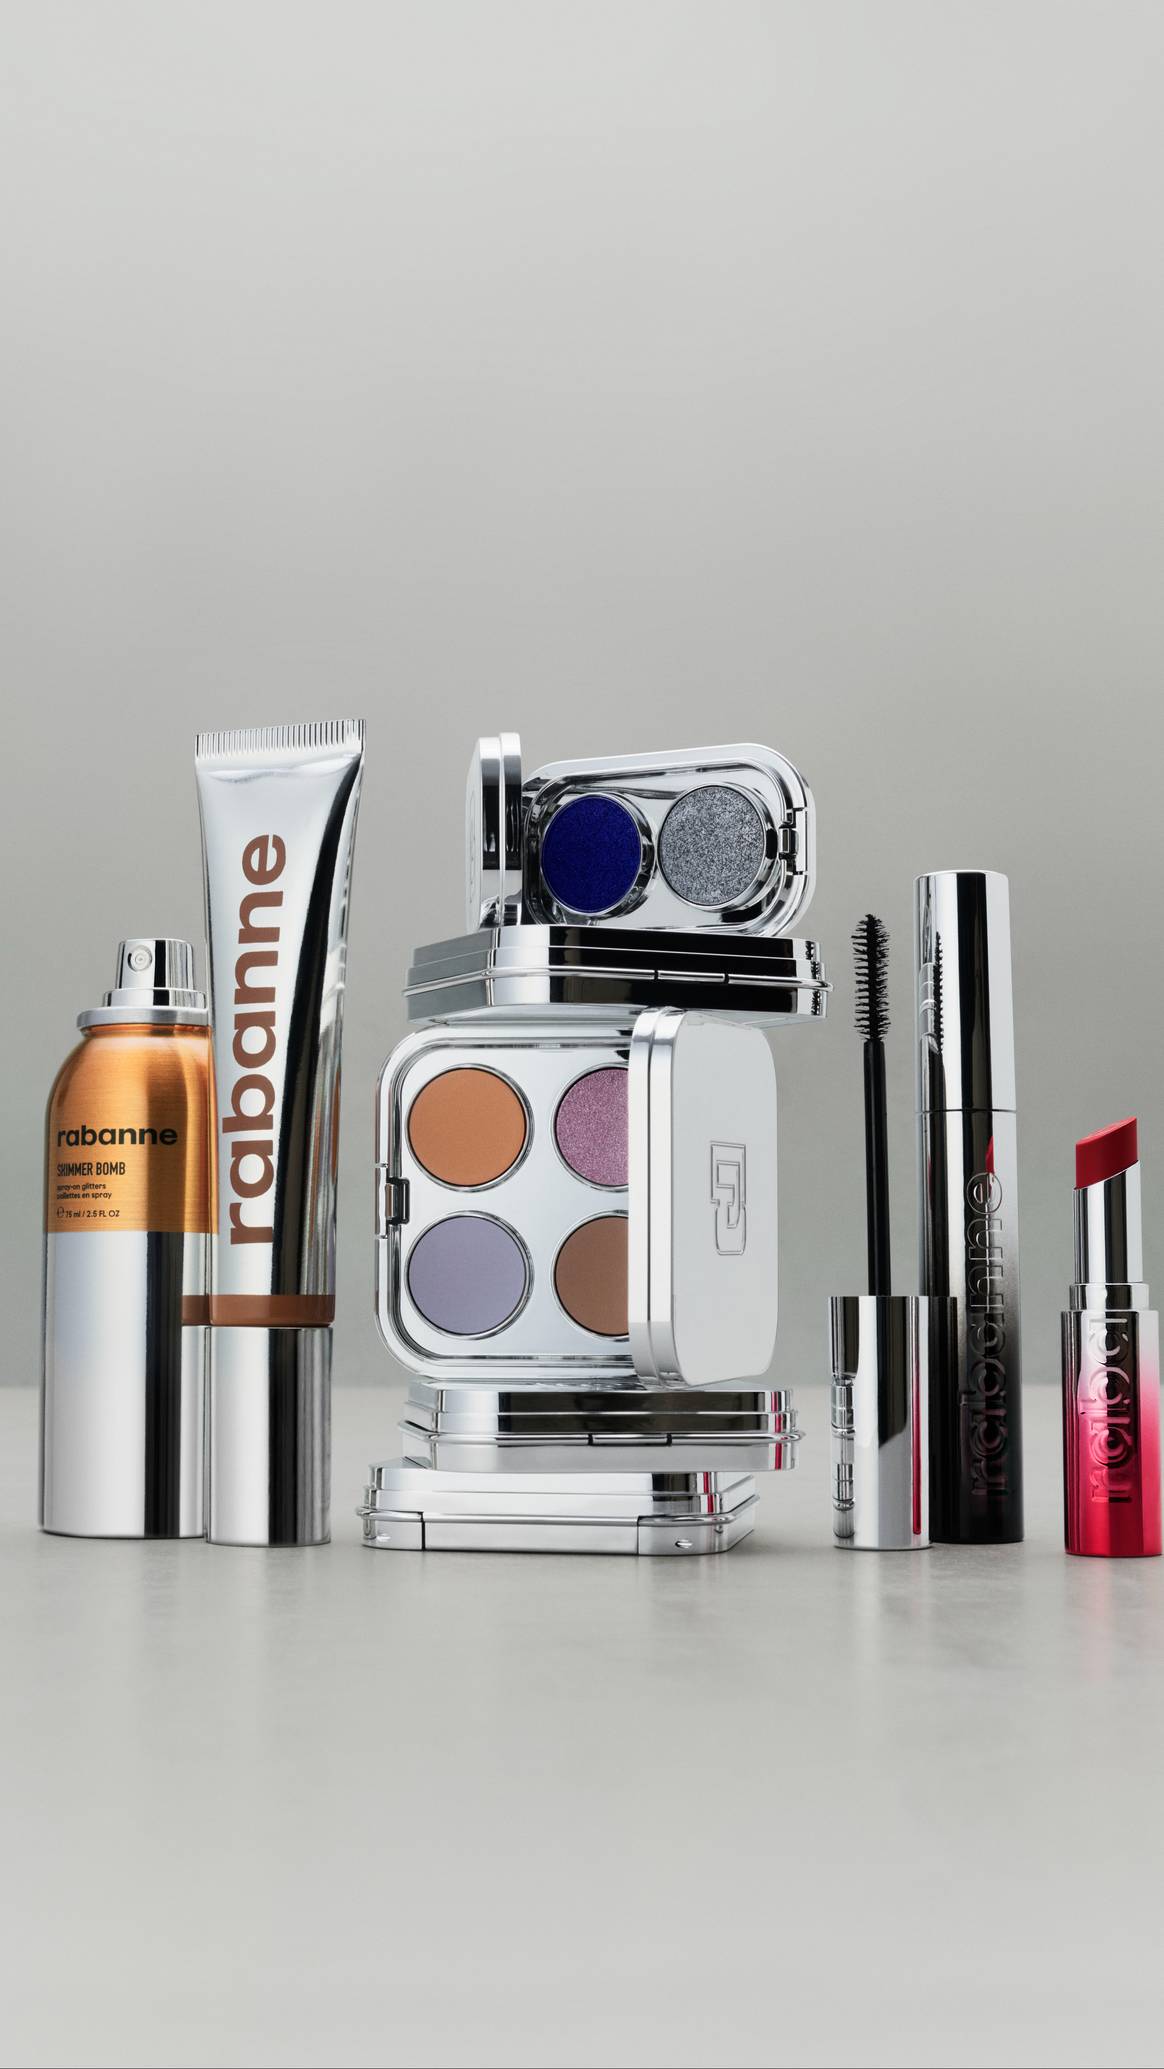 Modehuis Rabanne lanceert eerste make-up lijn.